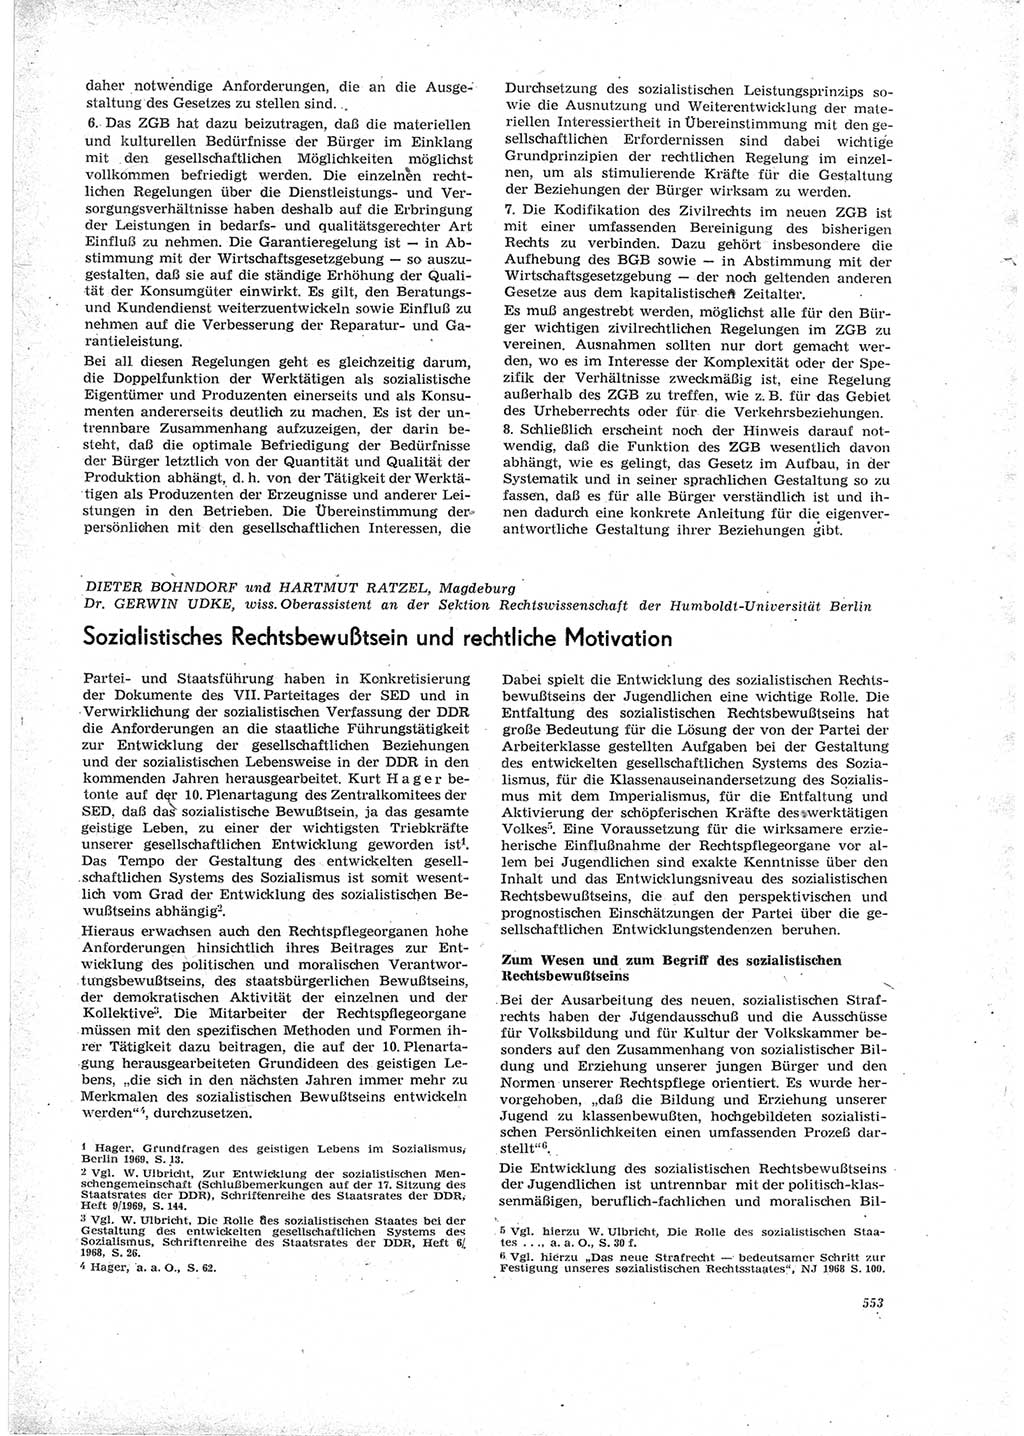 Neue Justiz (NJ), Zeitschrift für Recht und Rechtswissenschaft [Deutsche Demokratische Republik (DDR)], 23. Jahrgang 1969, Seite 553 (NJ DDR 1969, S. 553)